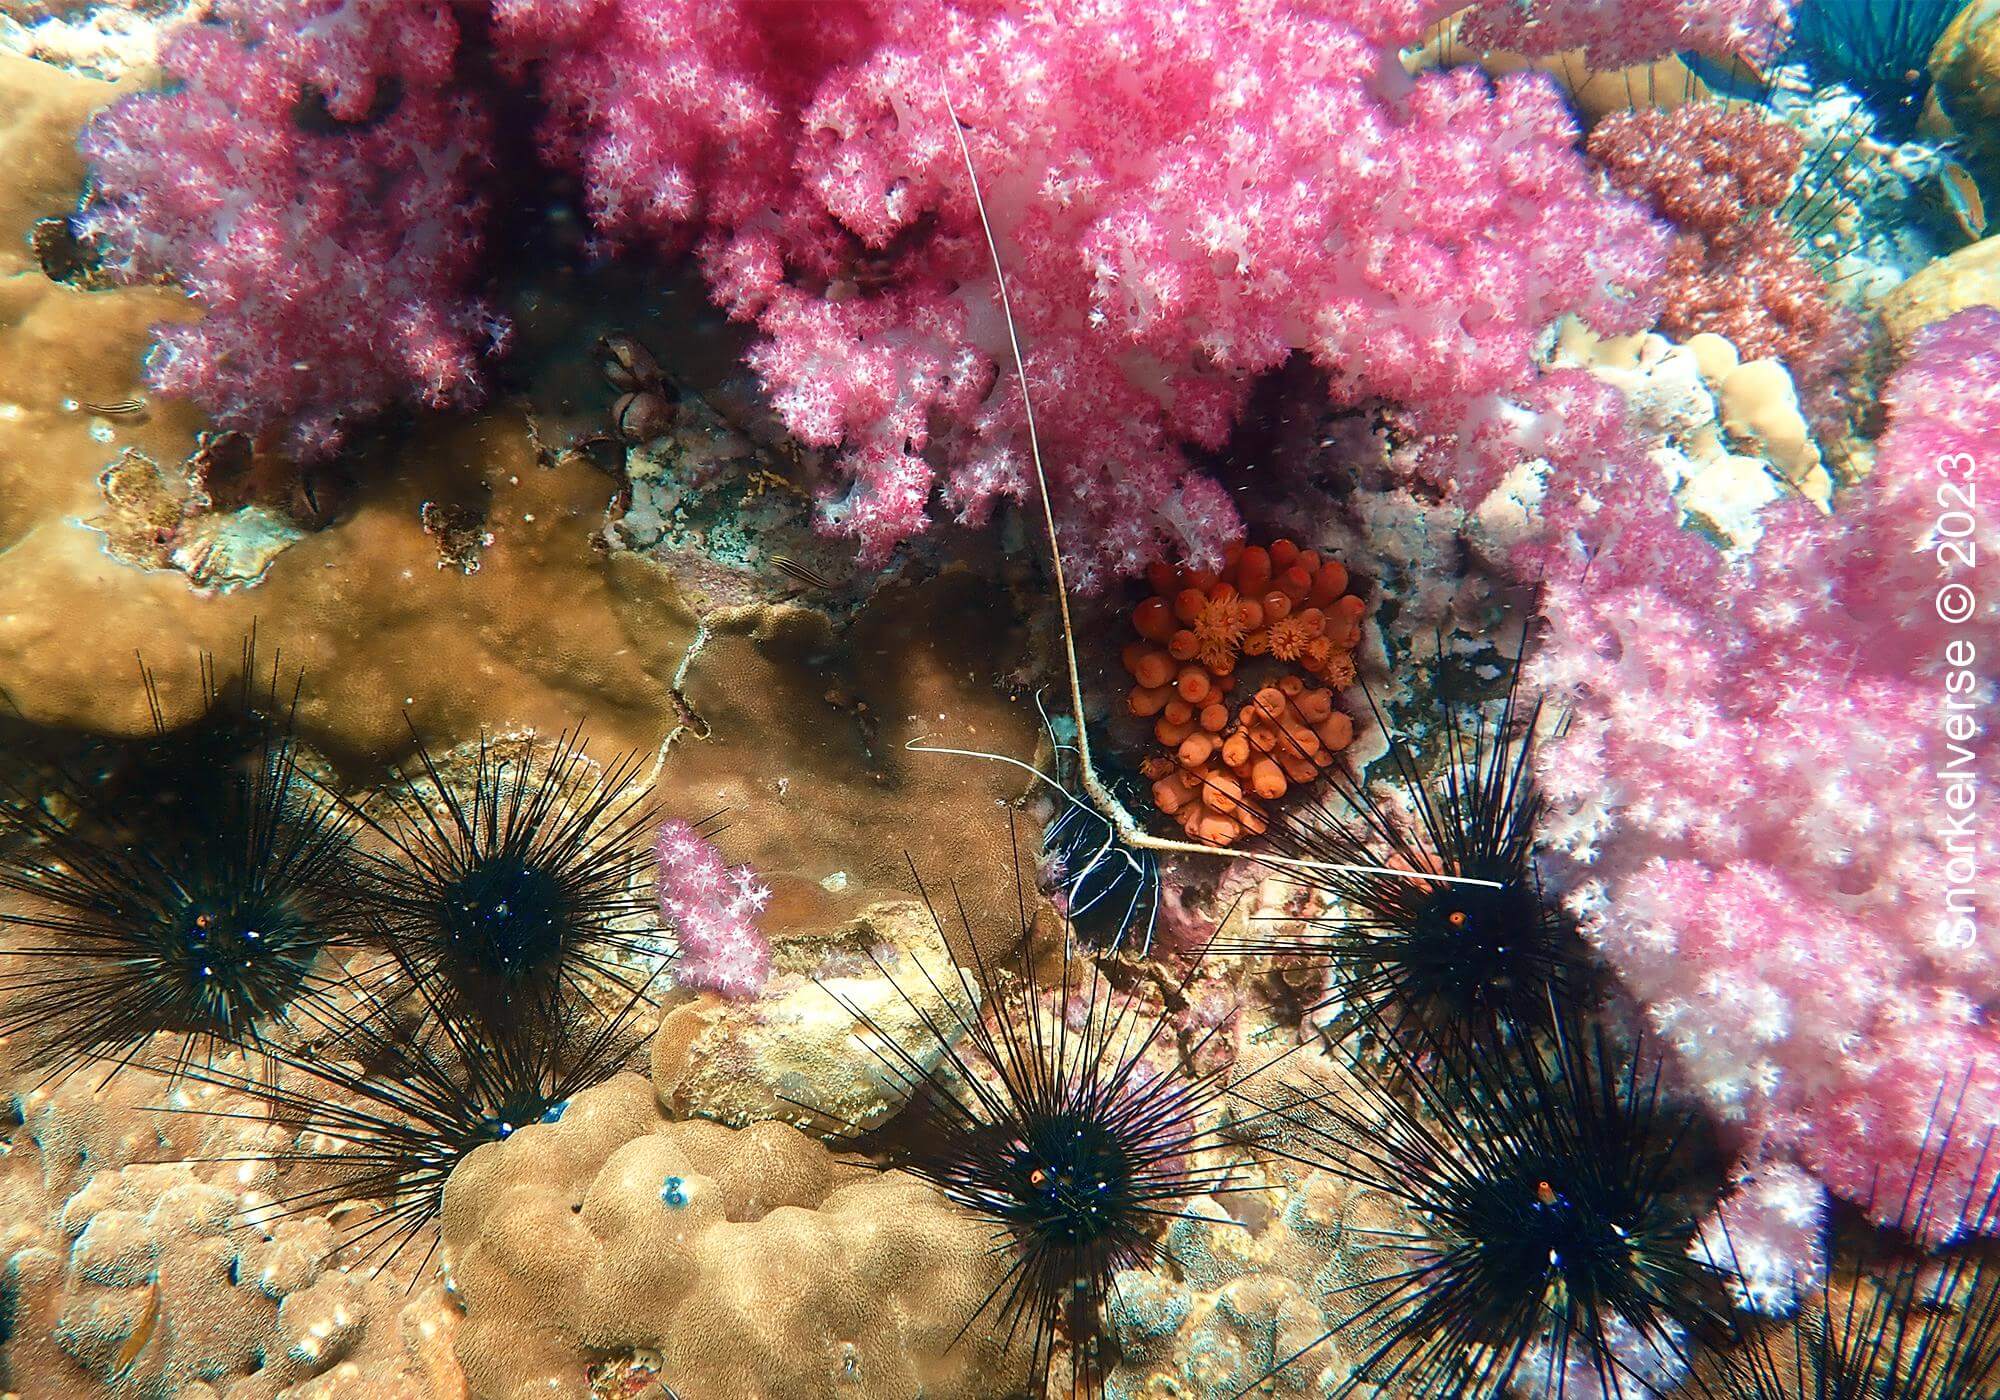 Jabang Pink Coral 3